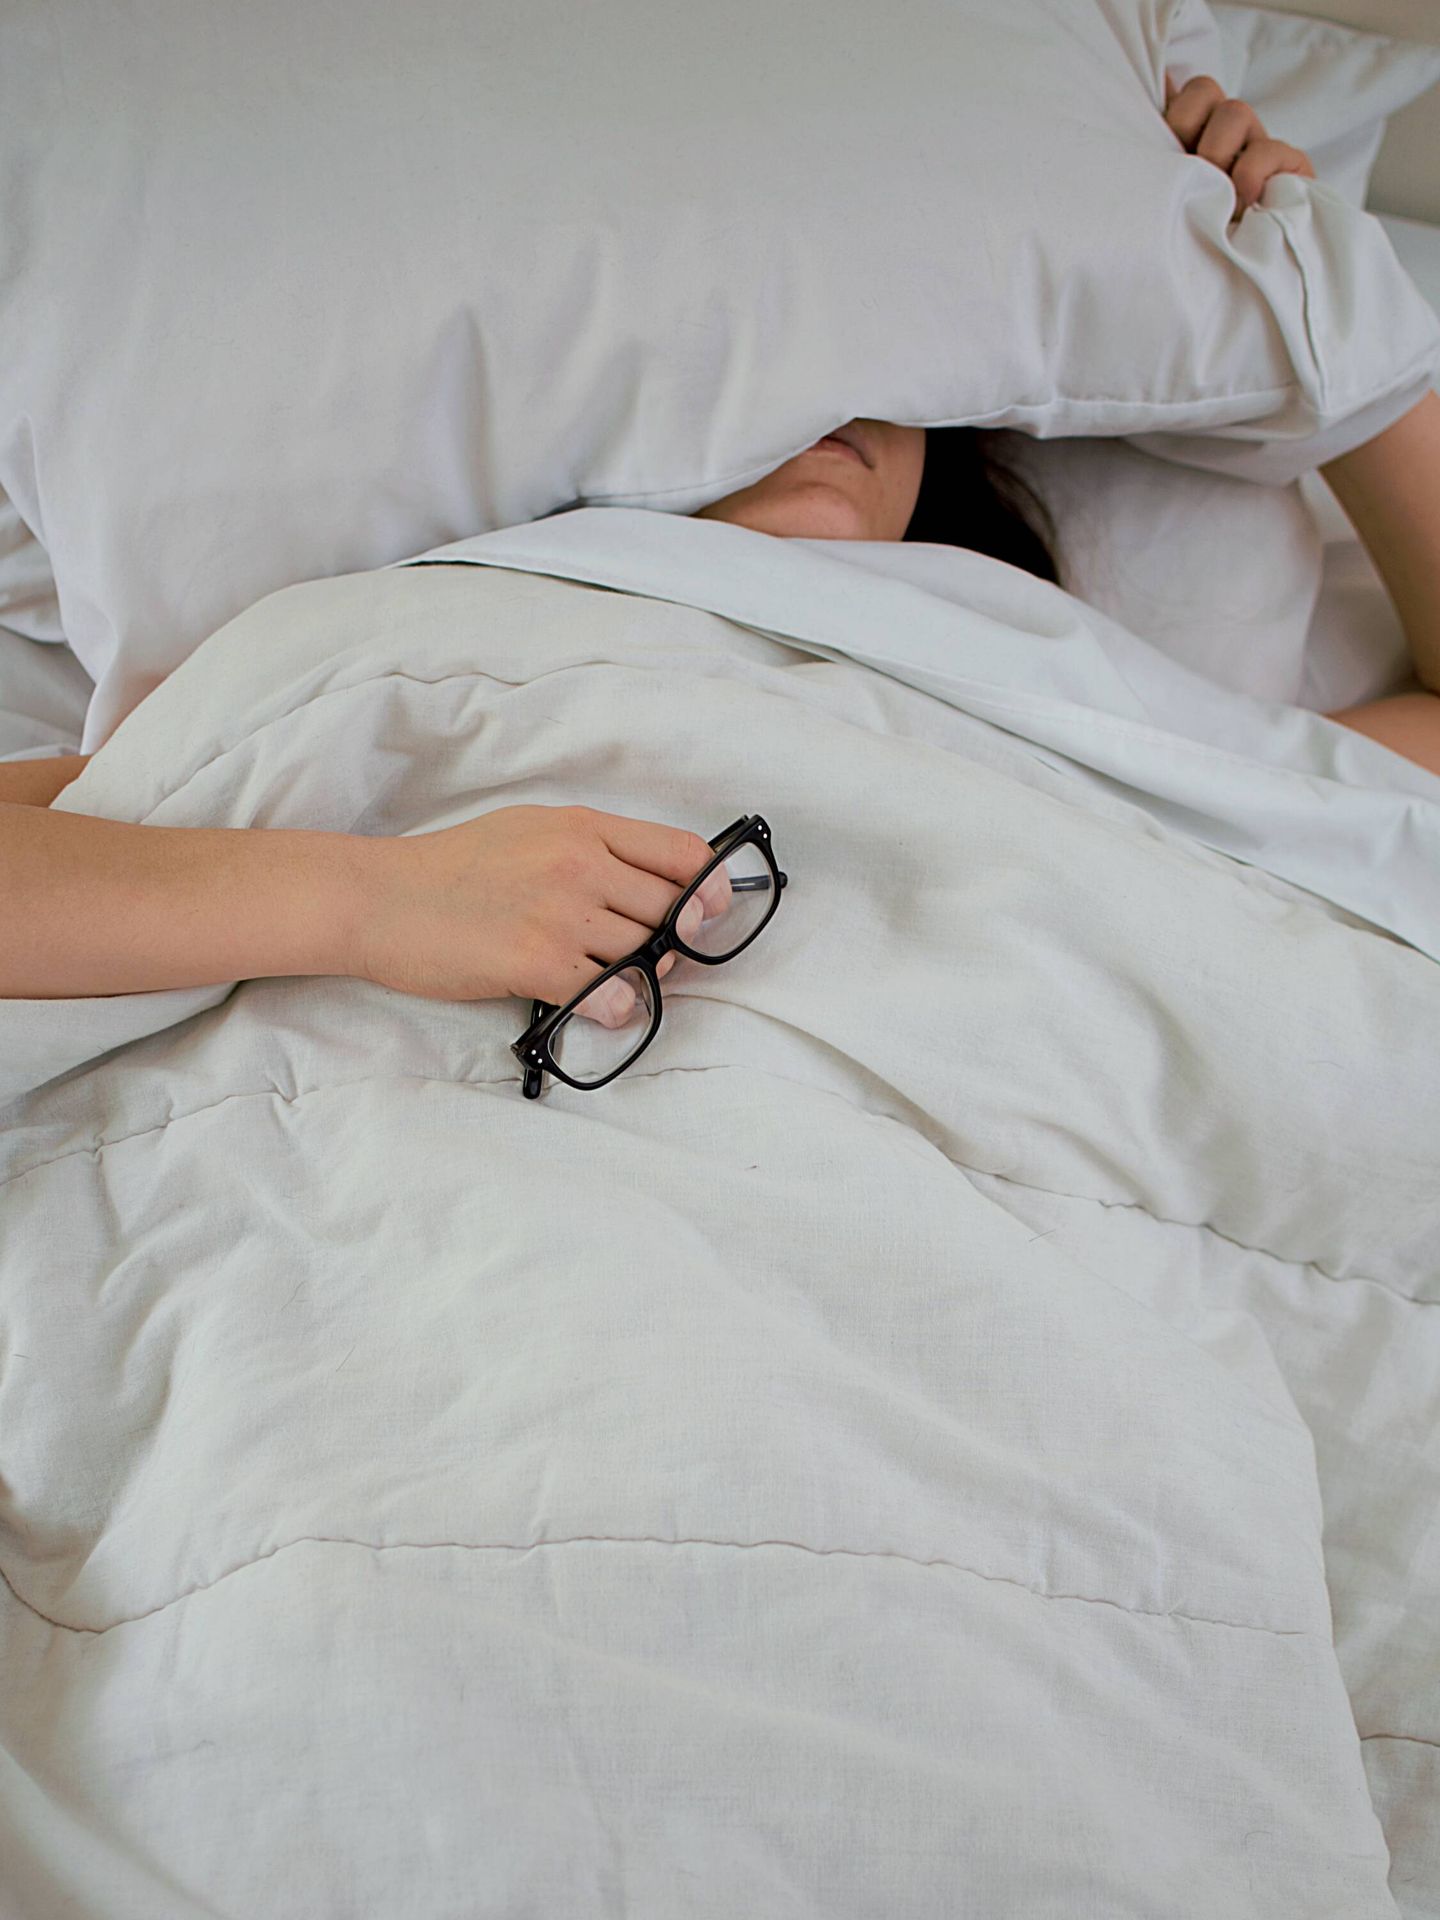 Trucos para dormir las horas que debes cuando tienes ansiedad. (Unsplash/Isabella Fischer)